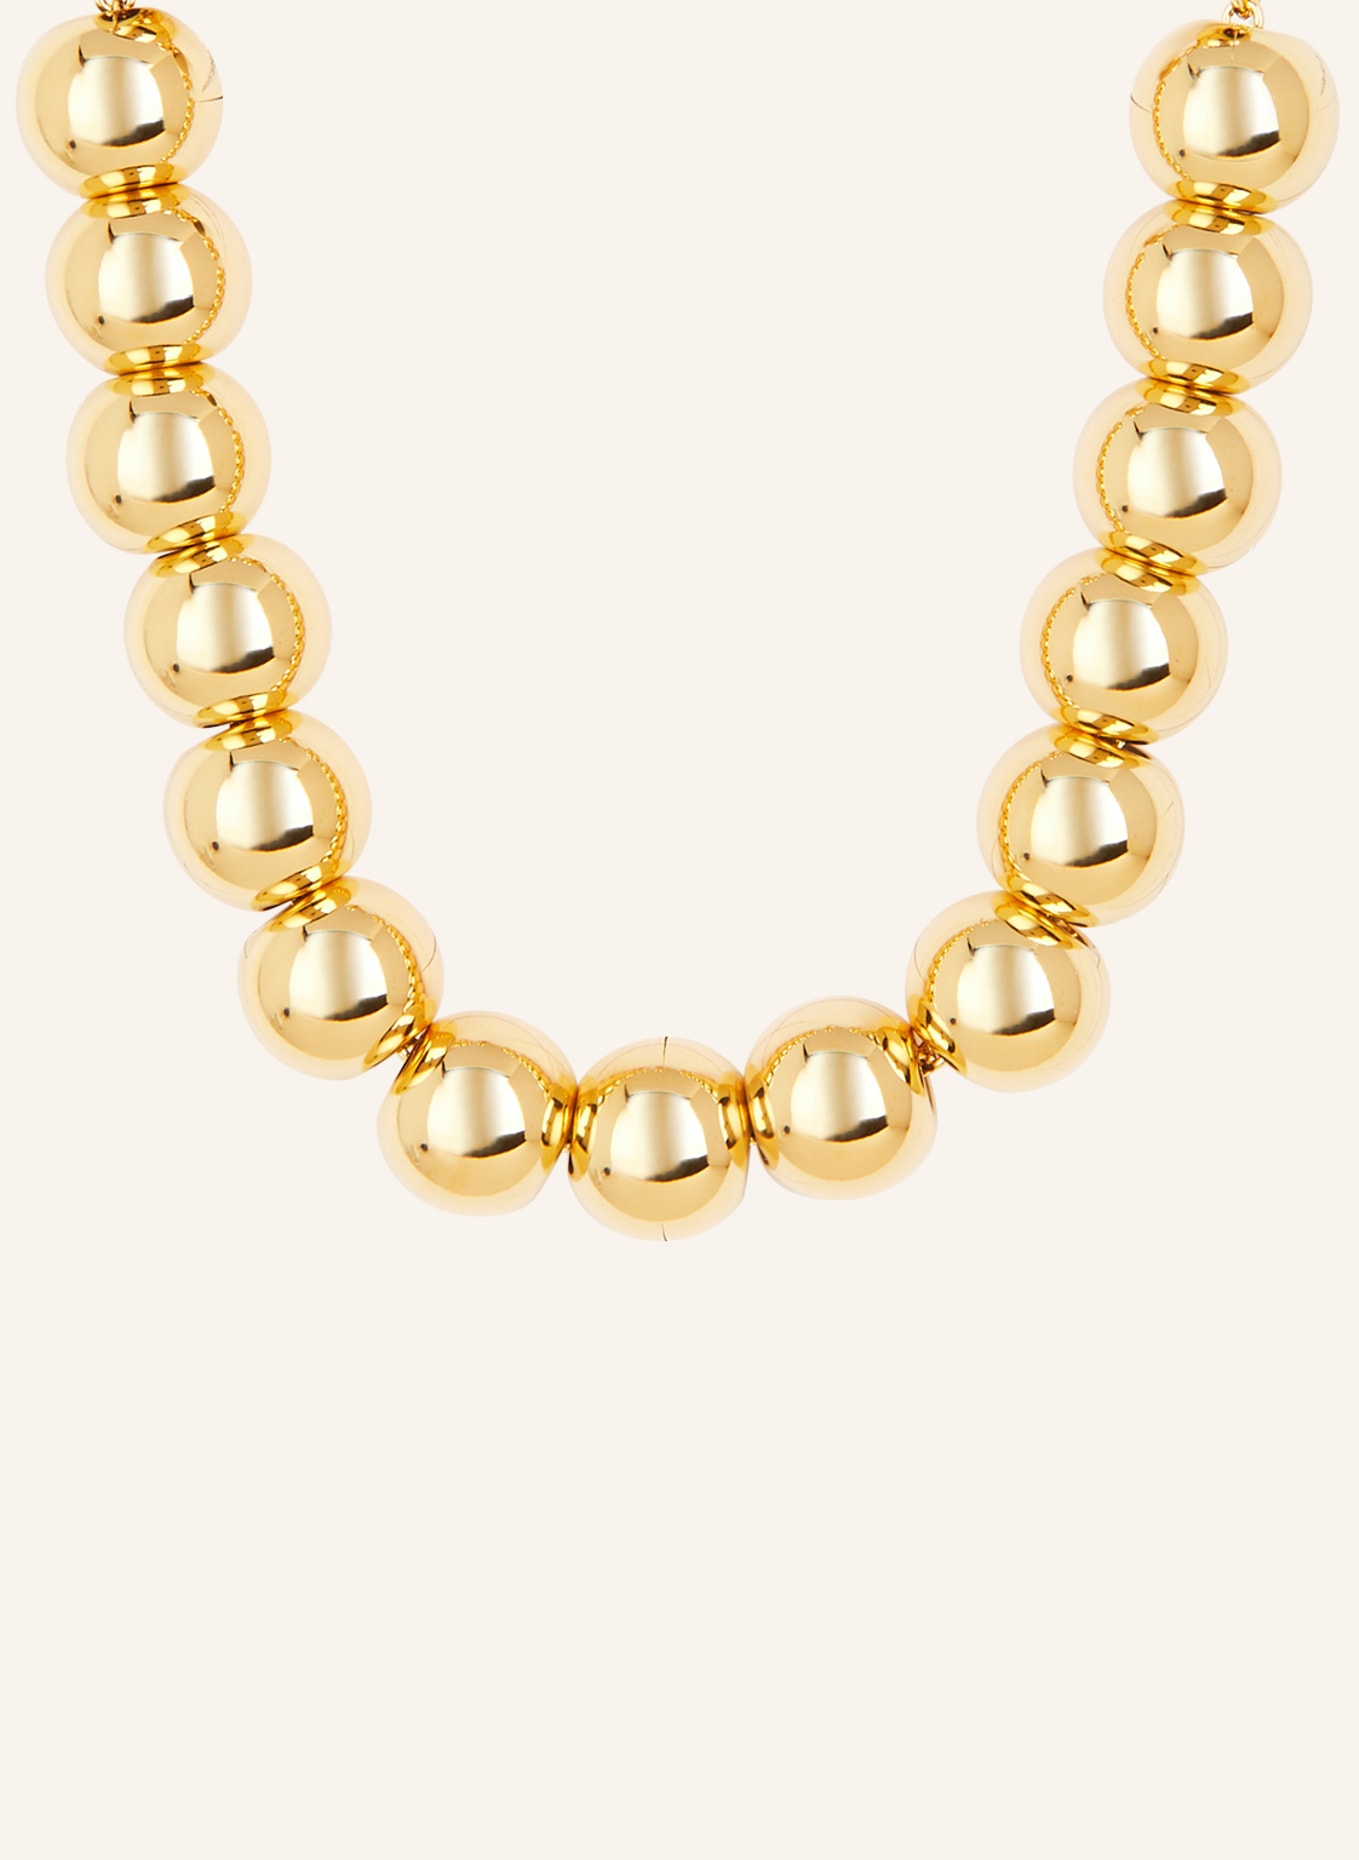 VANESSA BARONI Halskette SMALL BEADS, Farbe: GOLD (Bild 1)